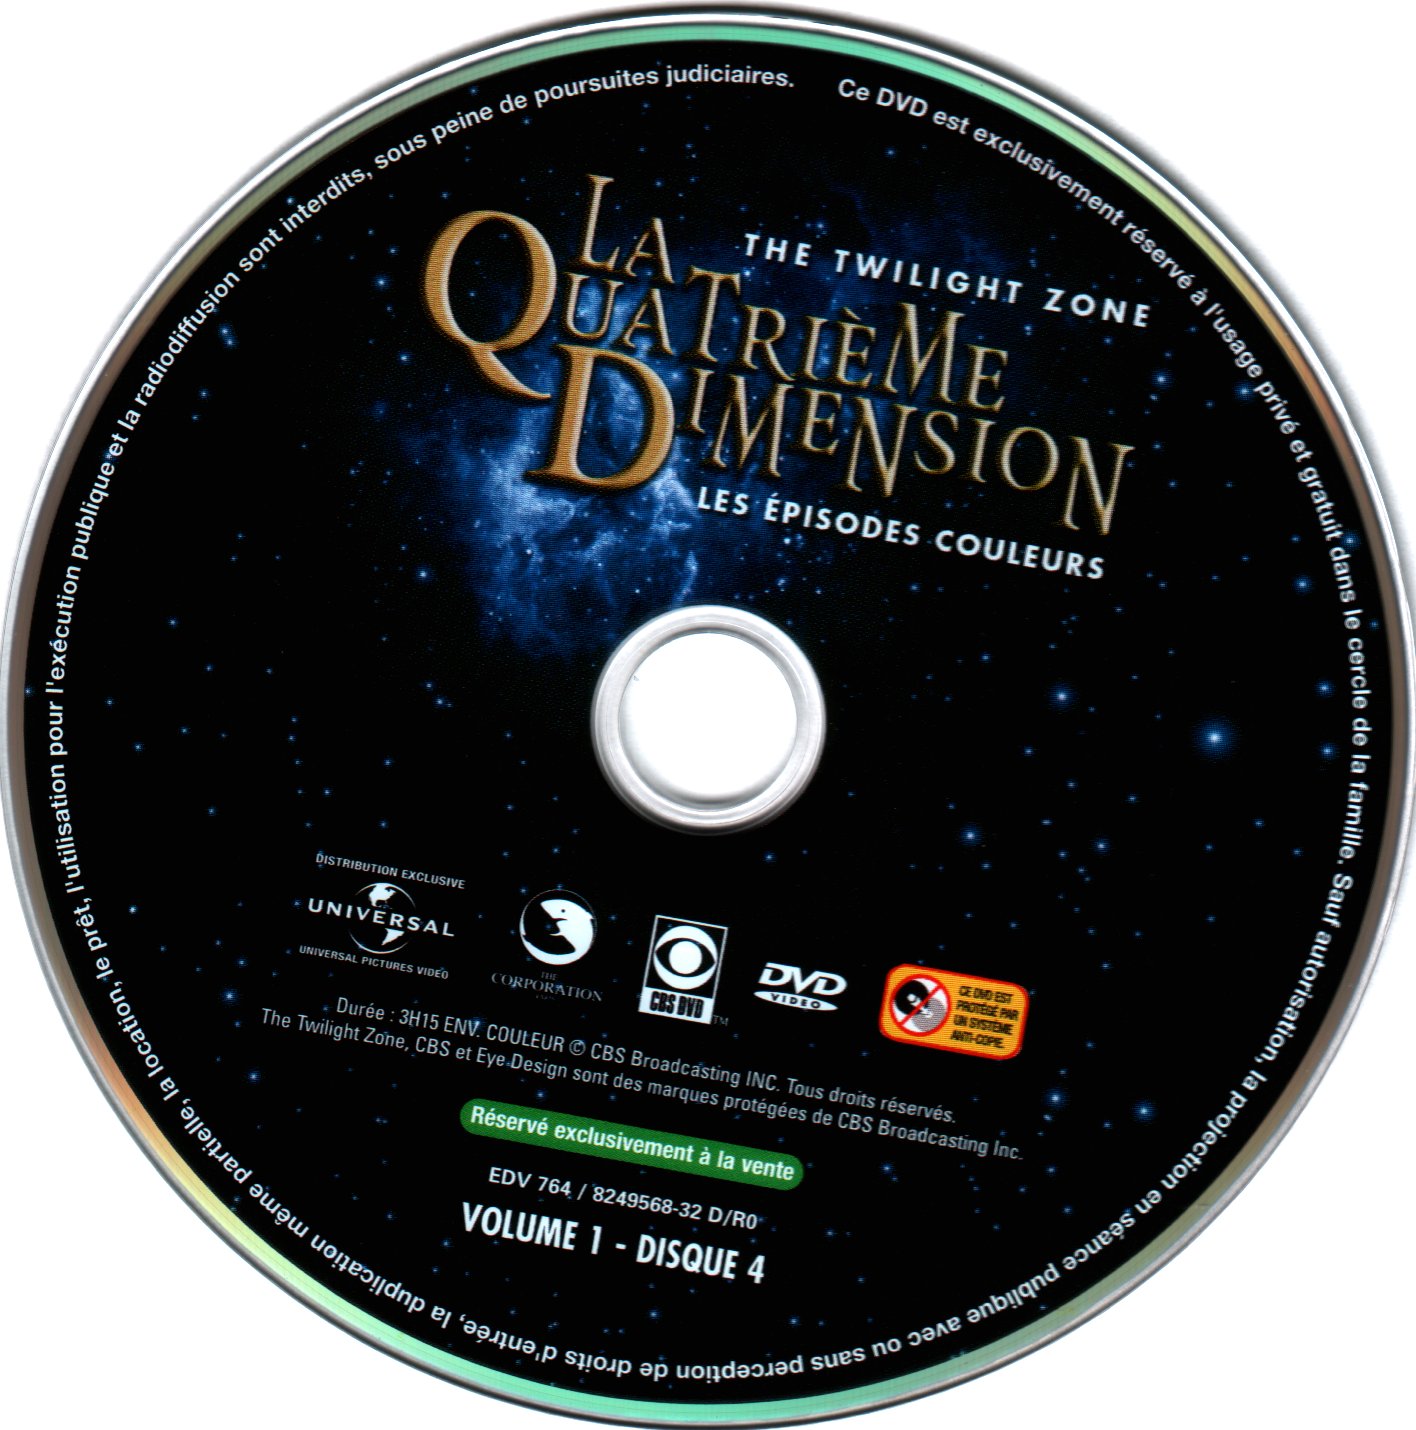 La quatrime dimension - Episodes couleurs vol 1 DVD 4